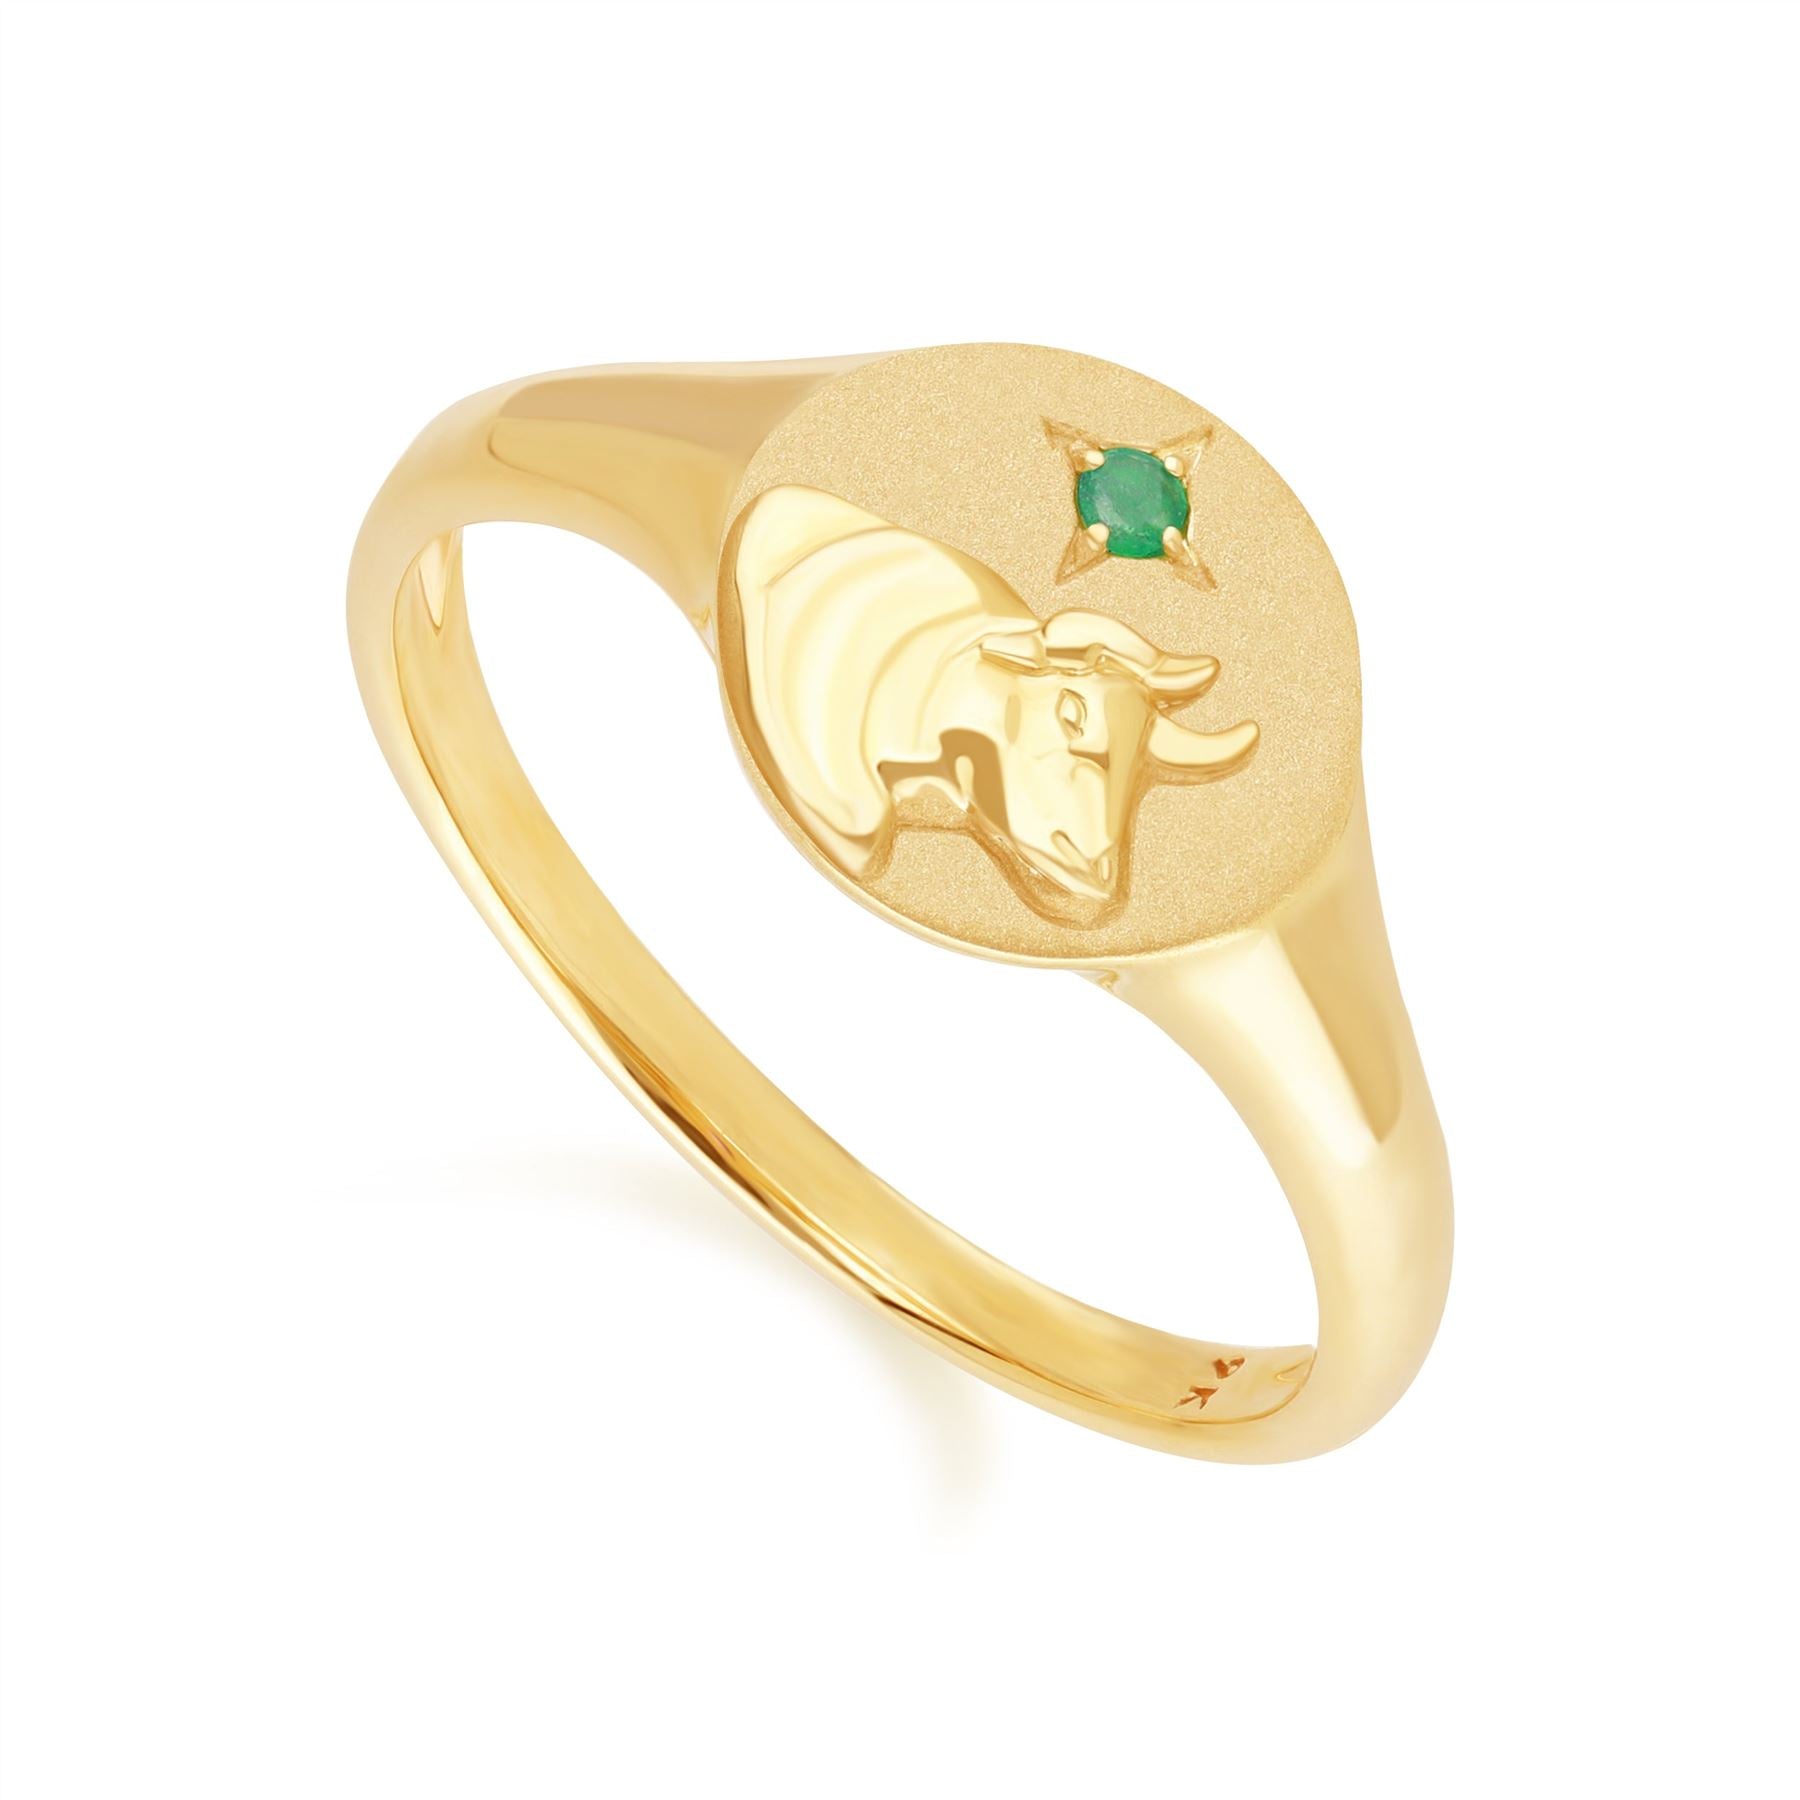 Zodiac Anello con sigillo Toro zodiacale  con smeraldo in oro giallo 9 carati